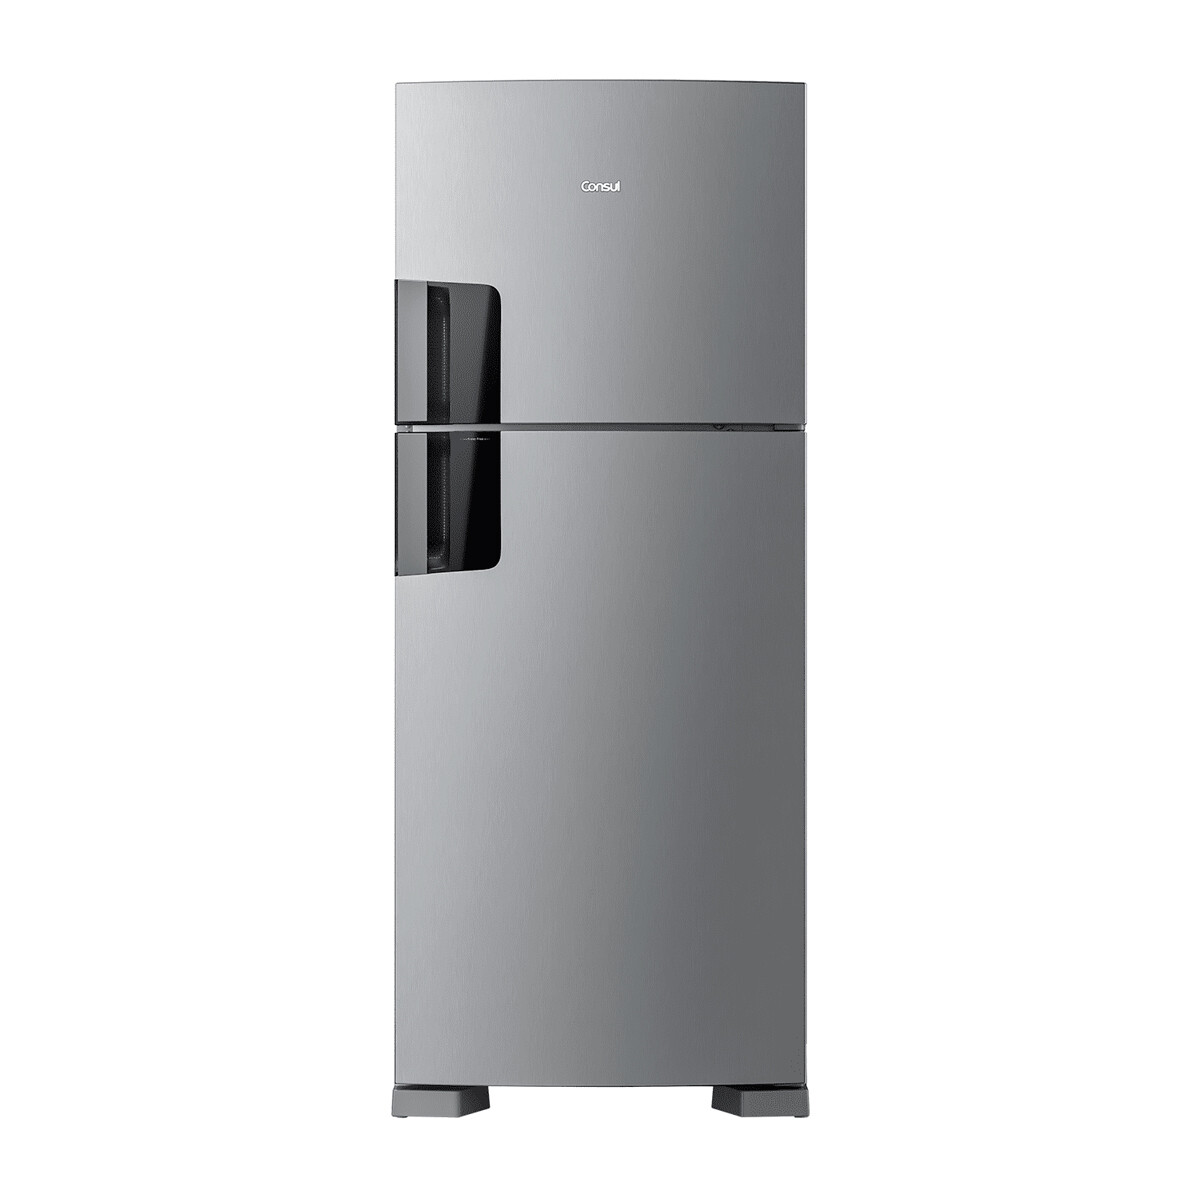 Refrigerador 438 Lts. Evox No Frost Consul Crm50hkduw 